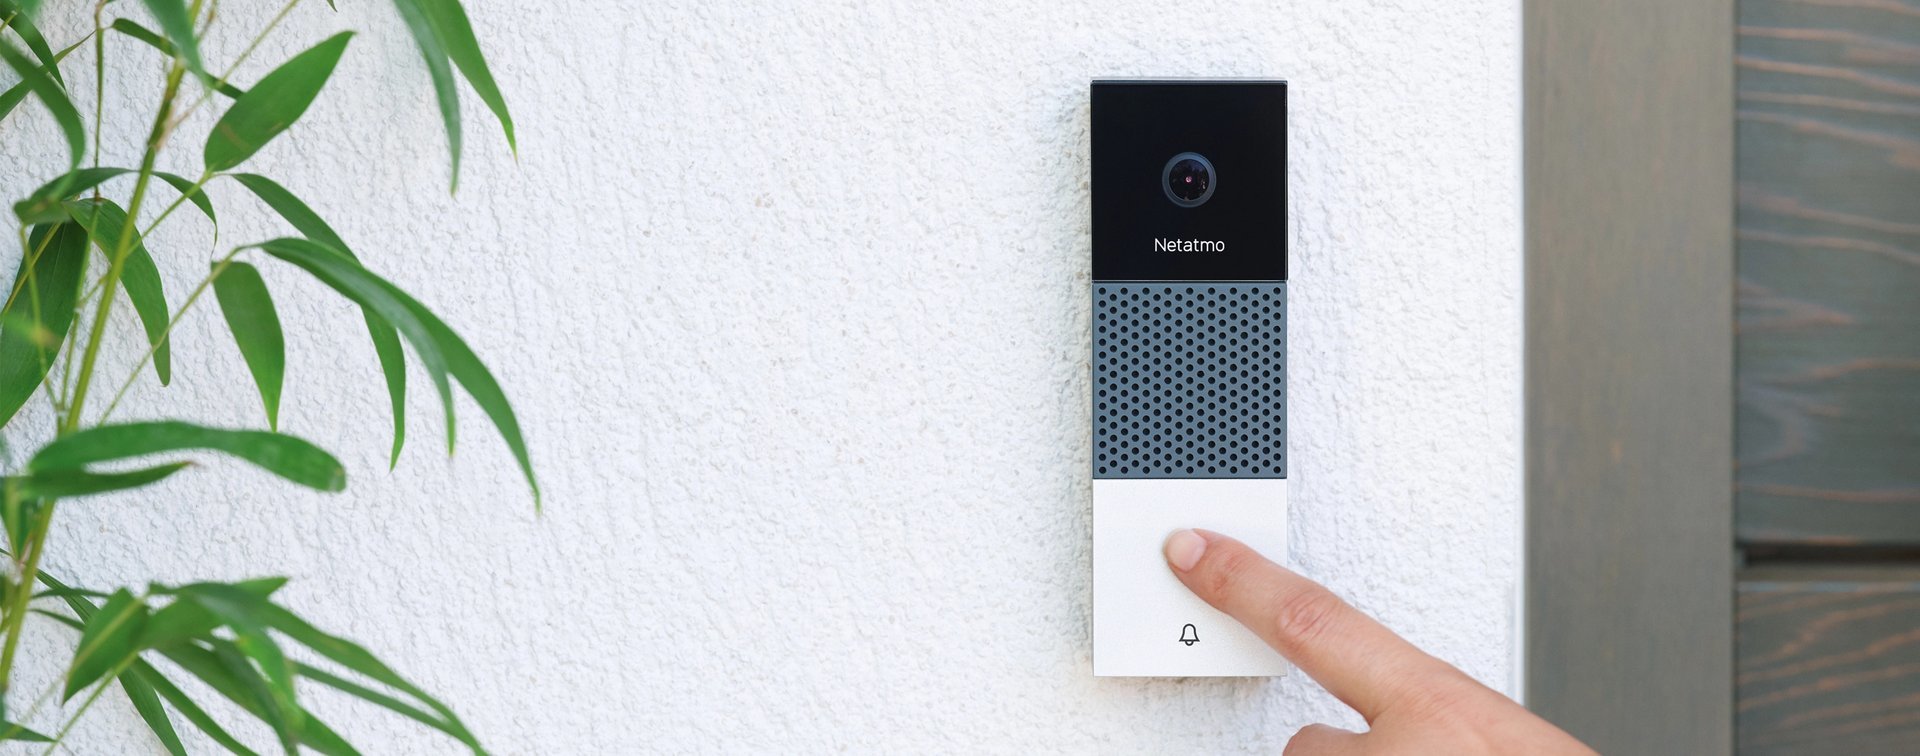 Inteligentny wideodomofon Netatmo Doorbell Szaro-biały widok od przodu